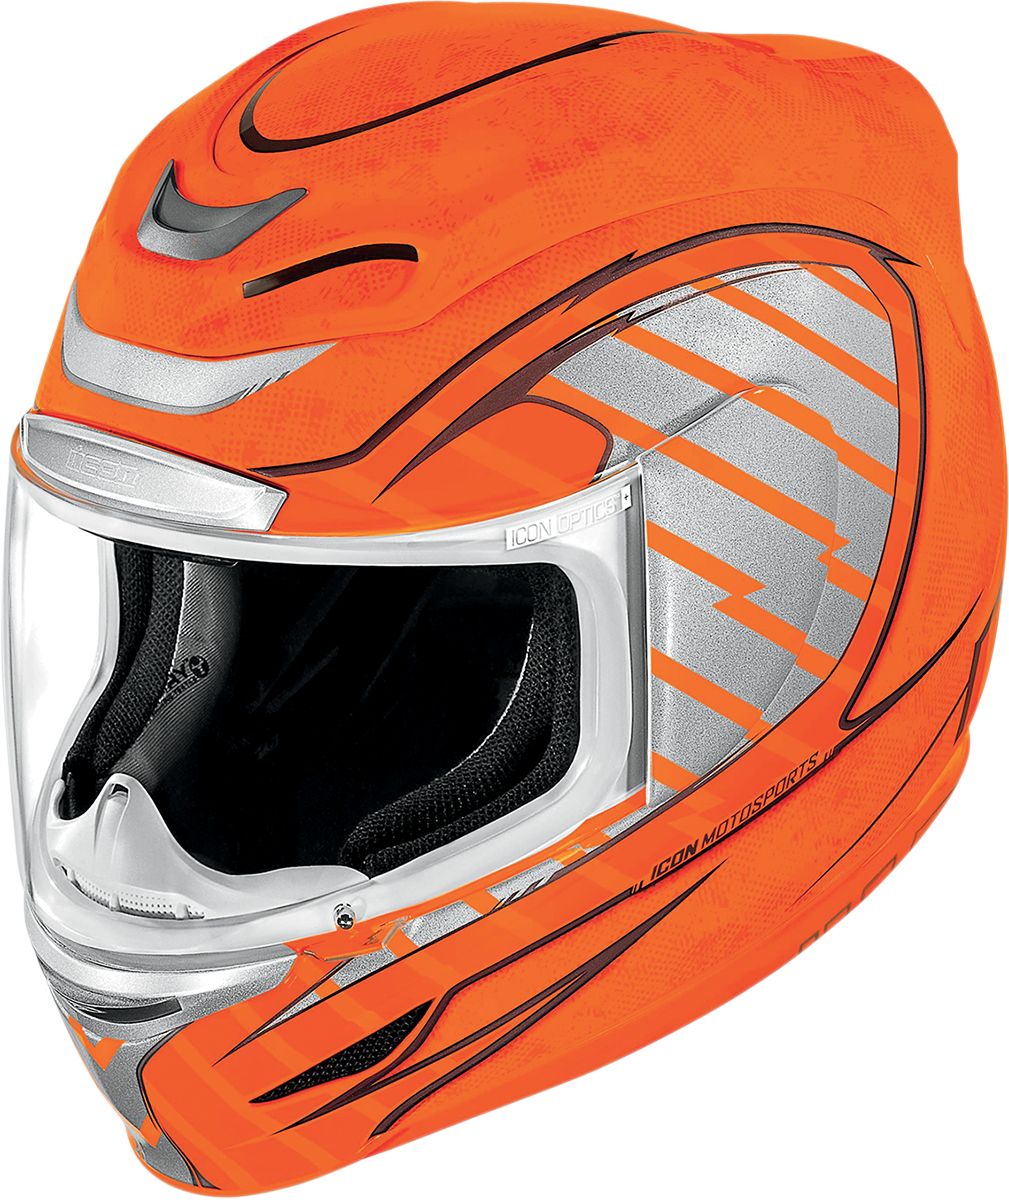 Motorcycle helmet PNG image, moto helmet    图片编号:9669